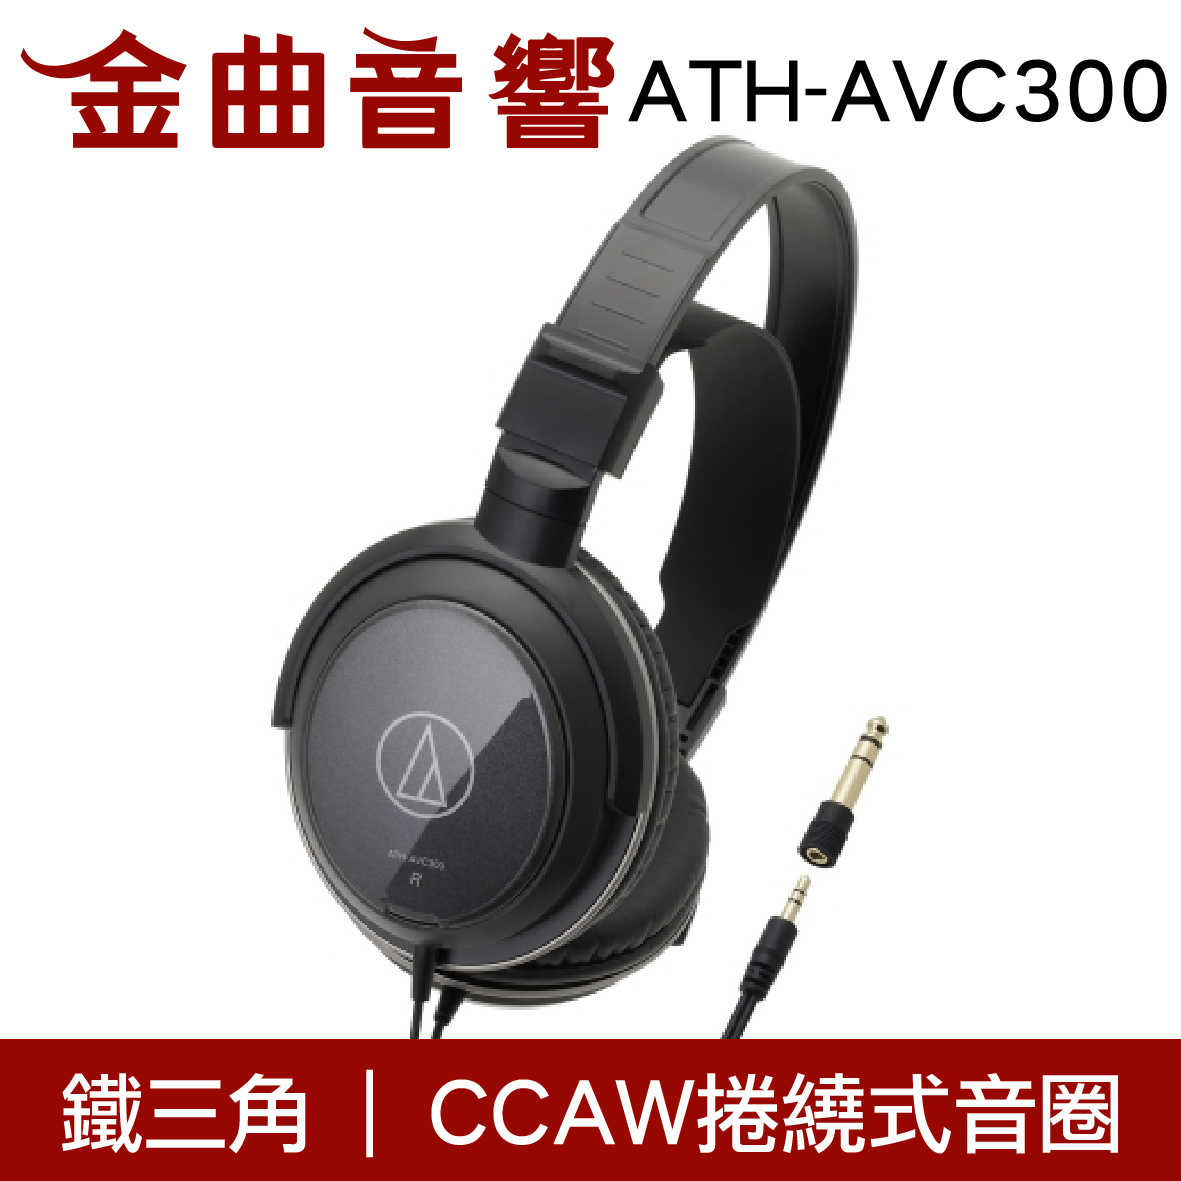 鐵三角 封閉式 耳罩式耳機 ATH-AVC300 | 金曲音響